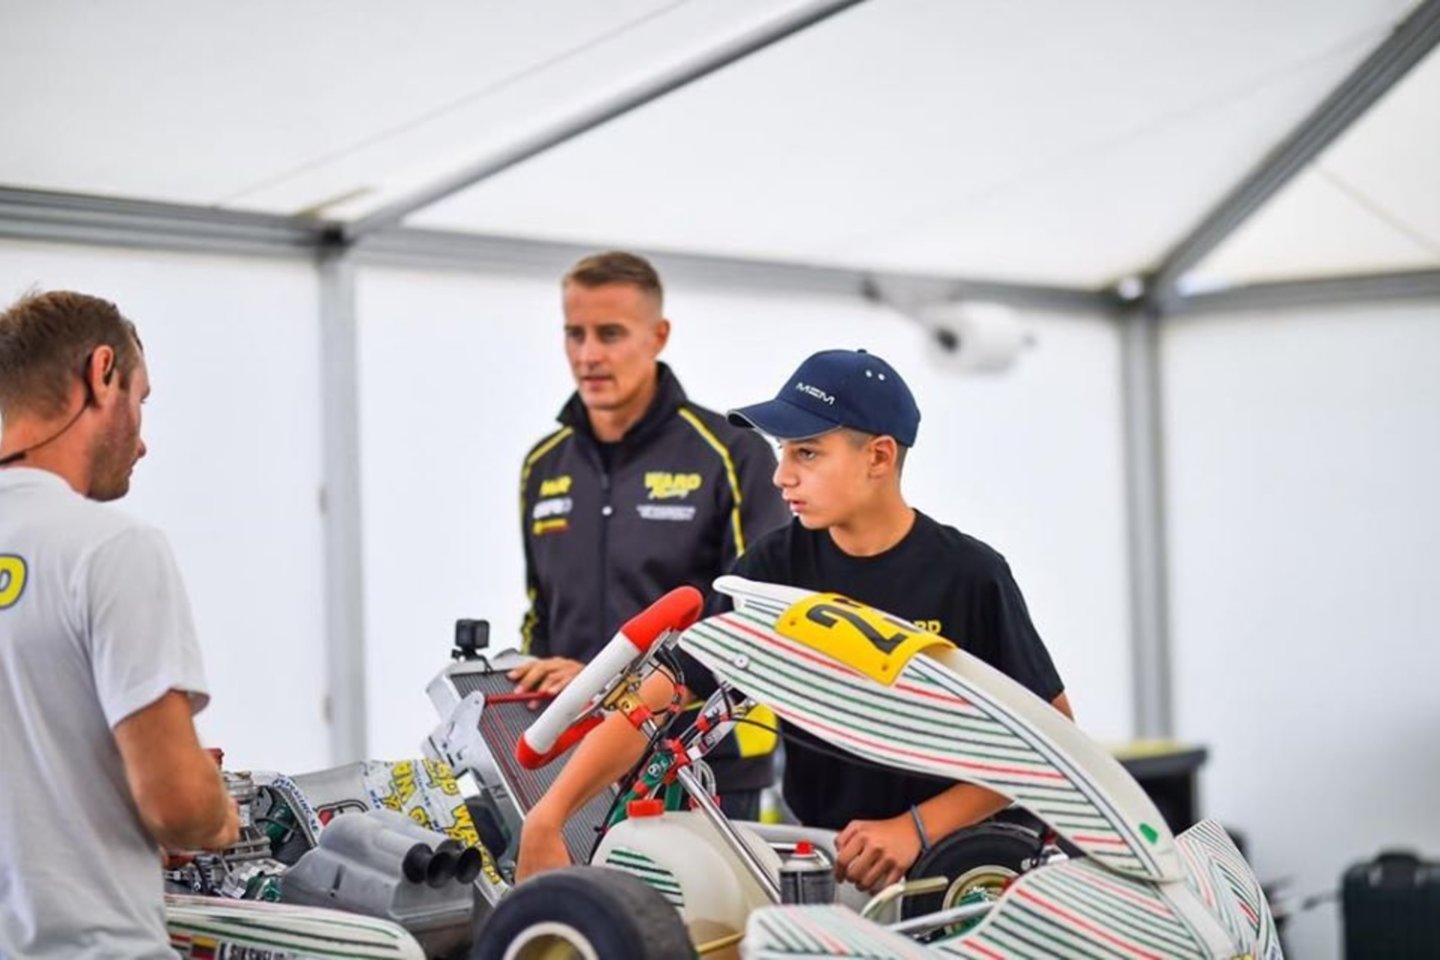  Kajaus Šikšnelio pasirodymas CIK-FIA Europos kartingo čempionate.<br> Organizatorių nuotr.